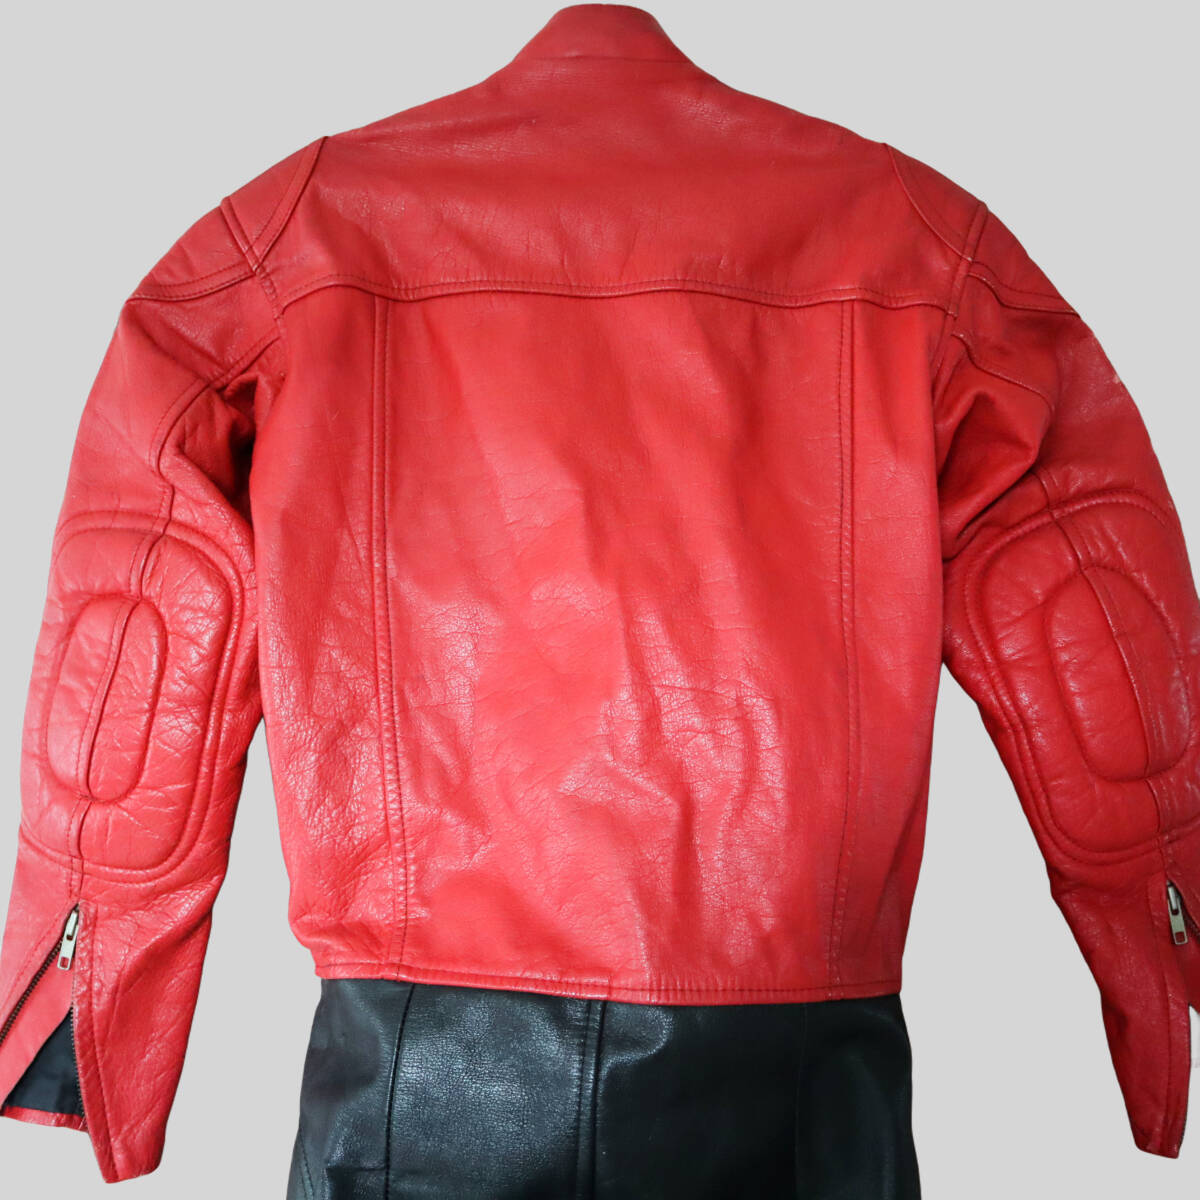 FREMANTLE/ Freemantle полный кожа костюм для гонок комбинезон комбинезон lai DIN g костюм кожаный комбинезон черный красный 